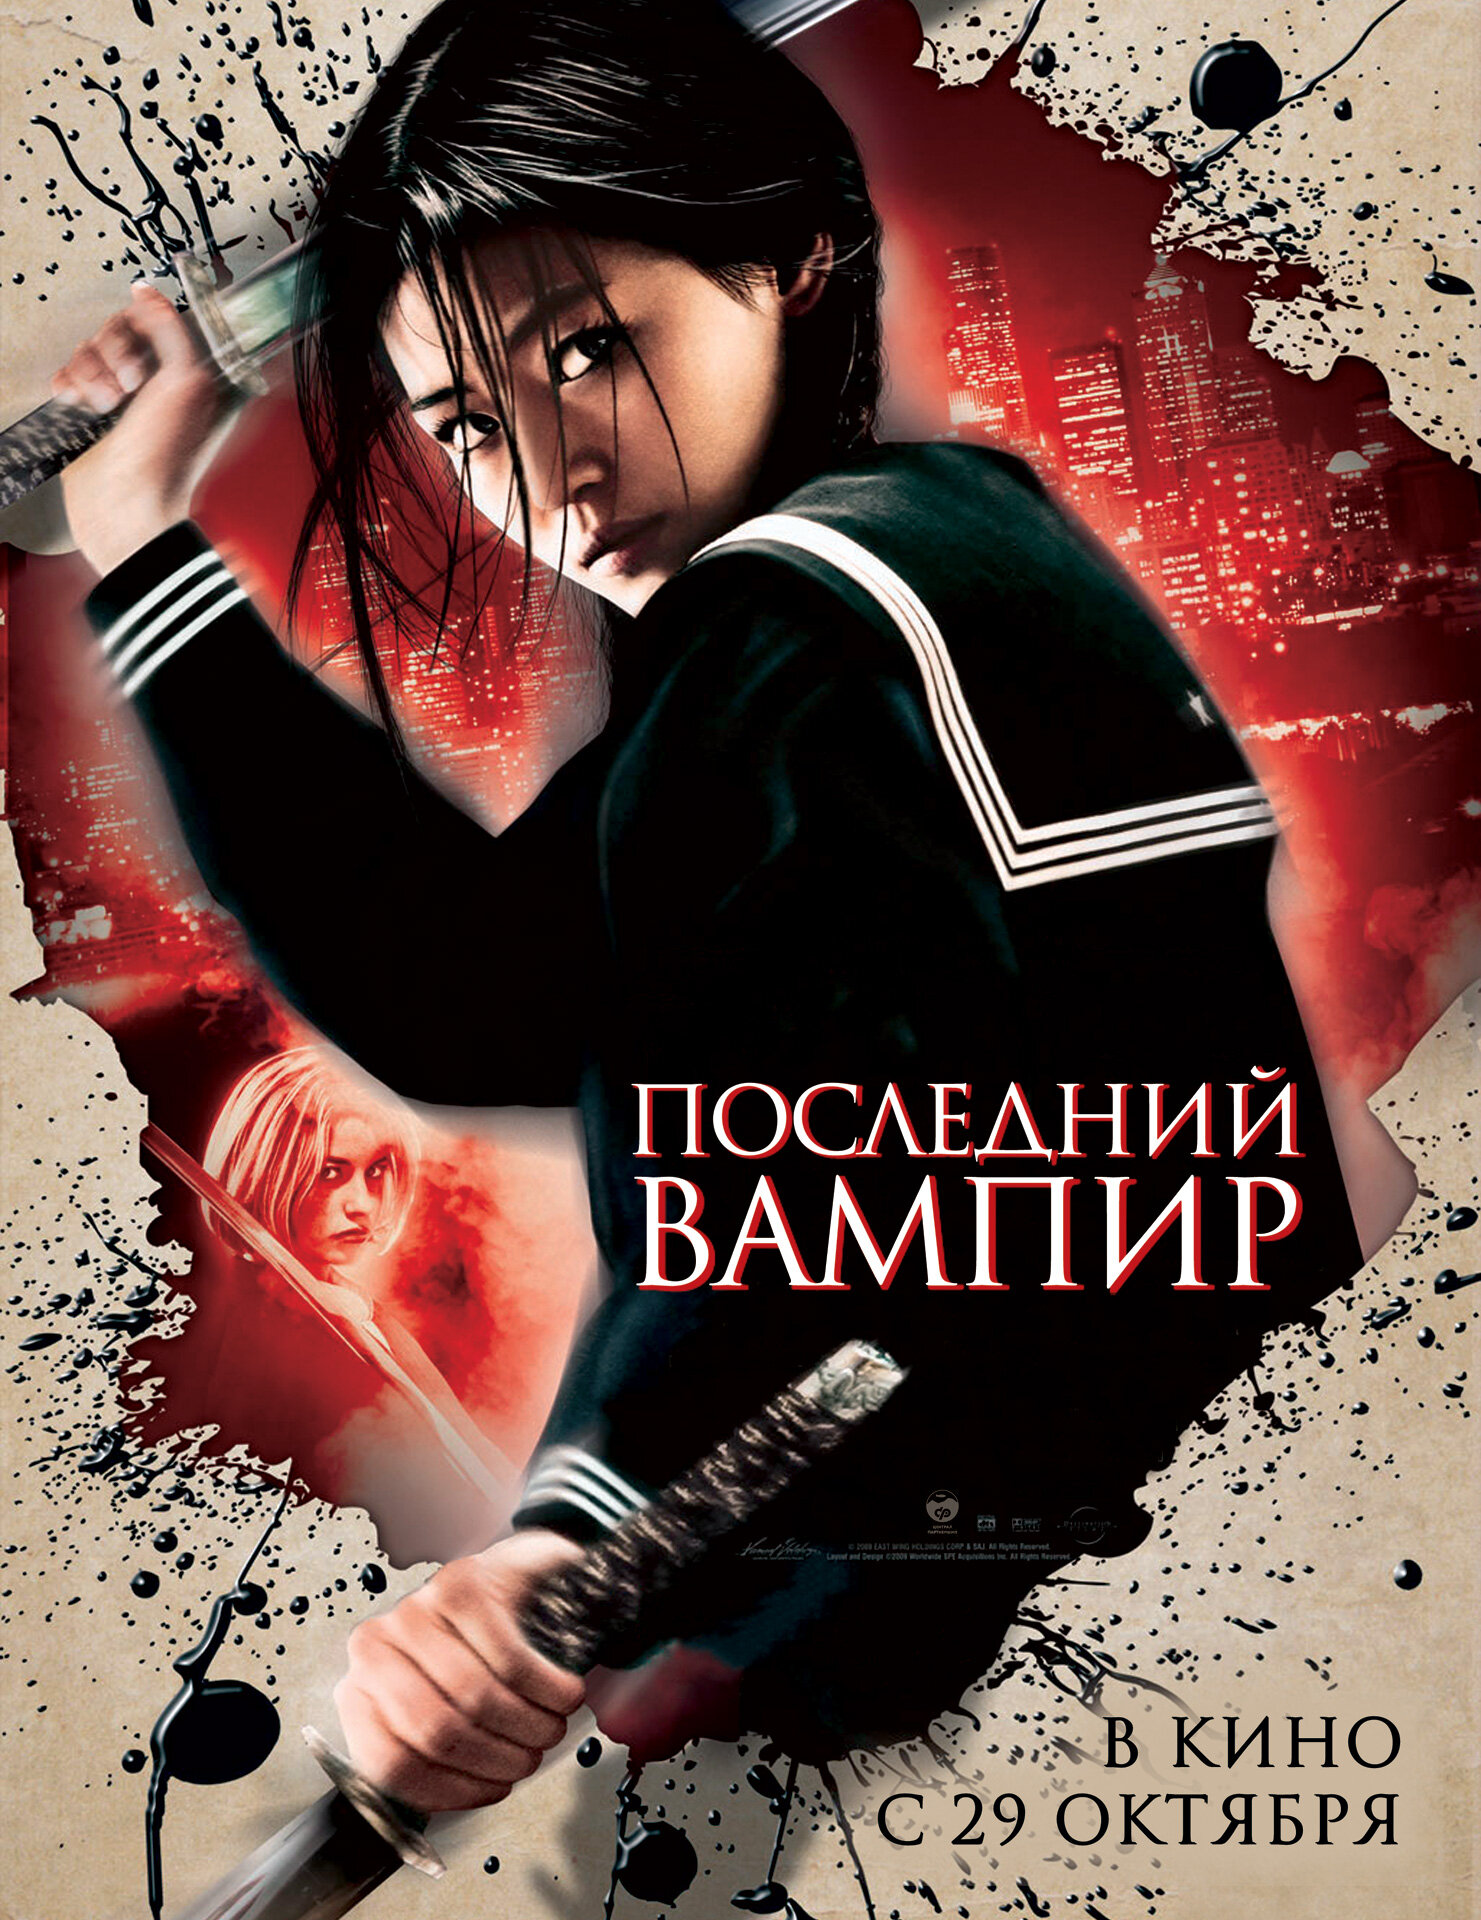 Останній вампір фільм (2009)